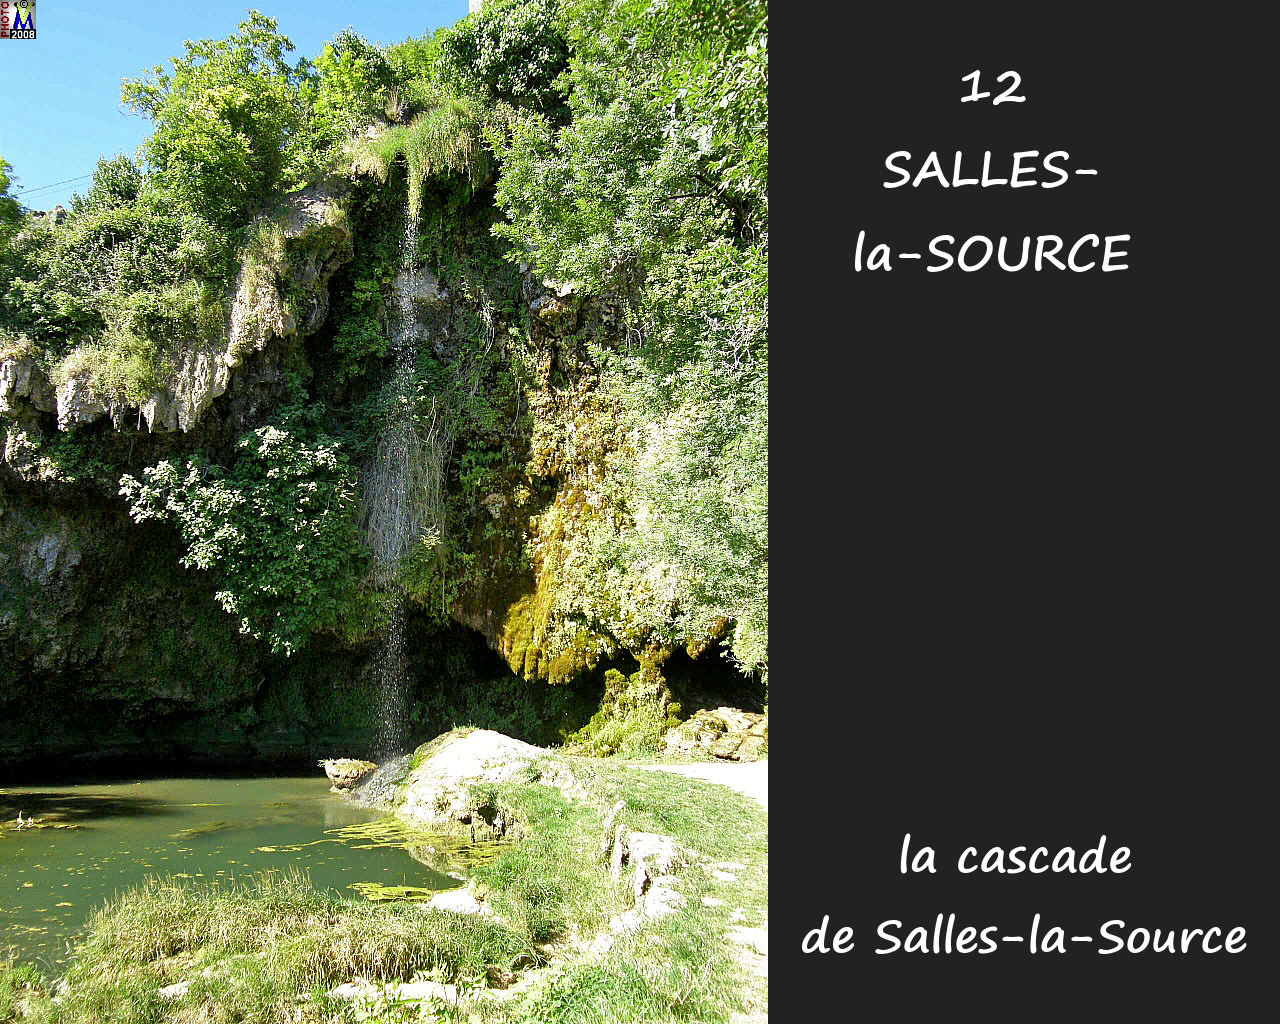 12SALLES-SOURCE_cascade_100.jpg